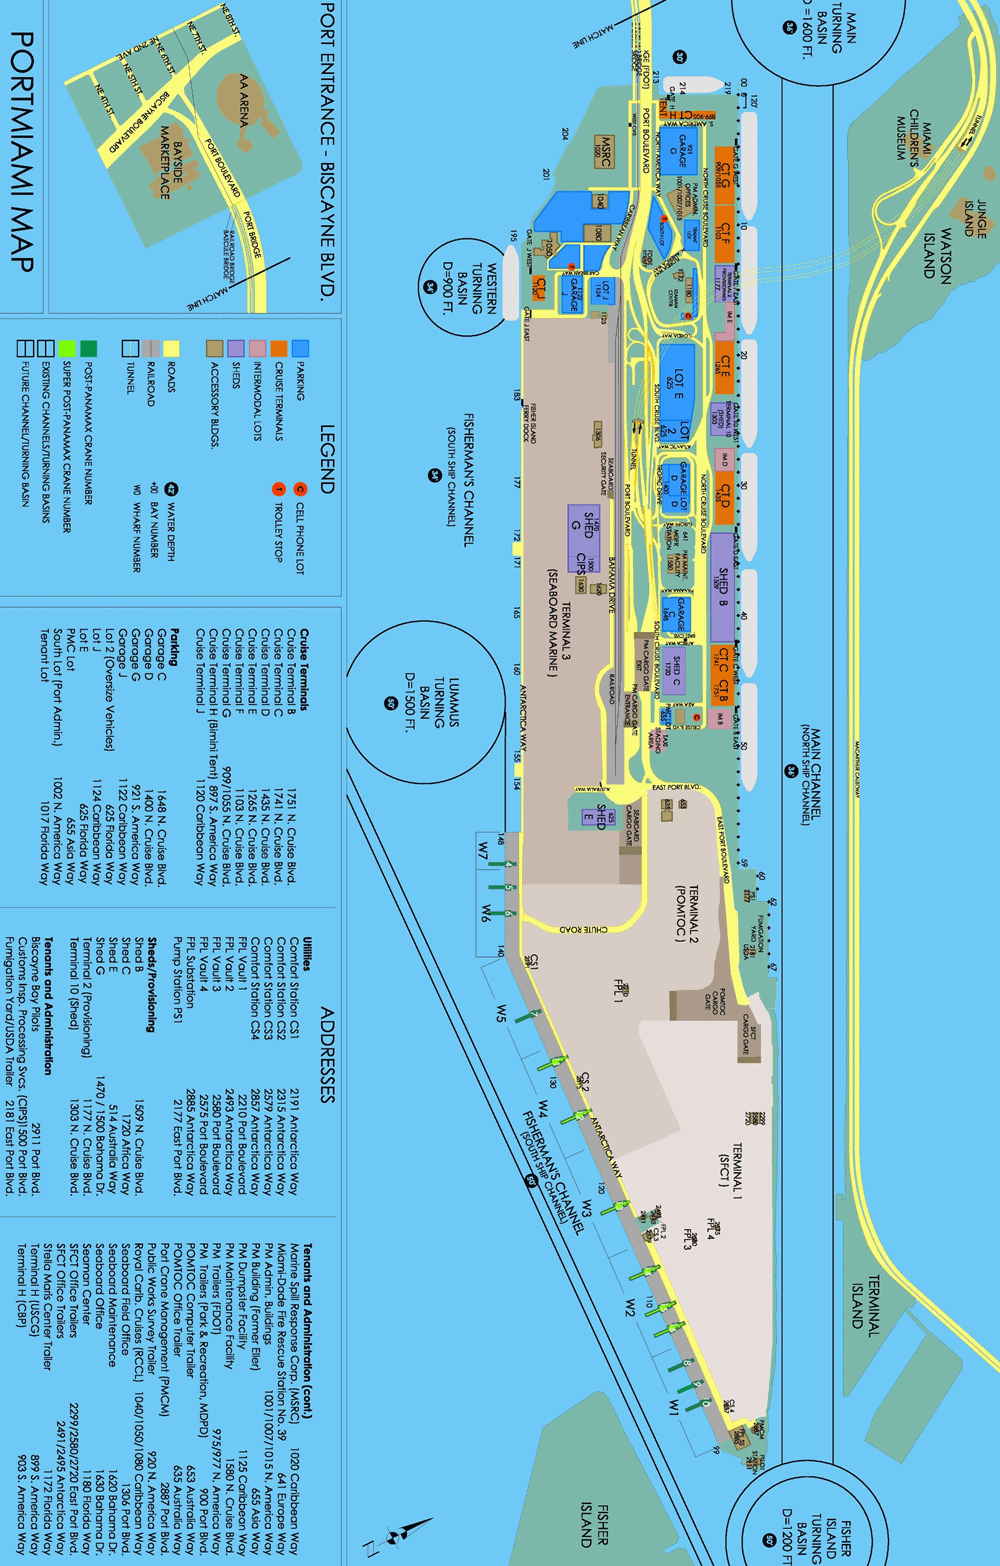 Miami cruise port map (printable)